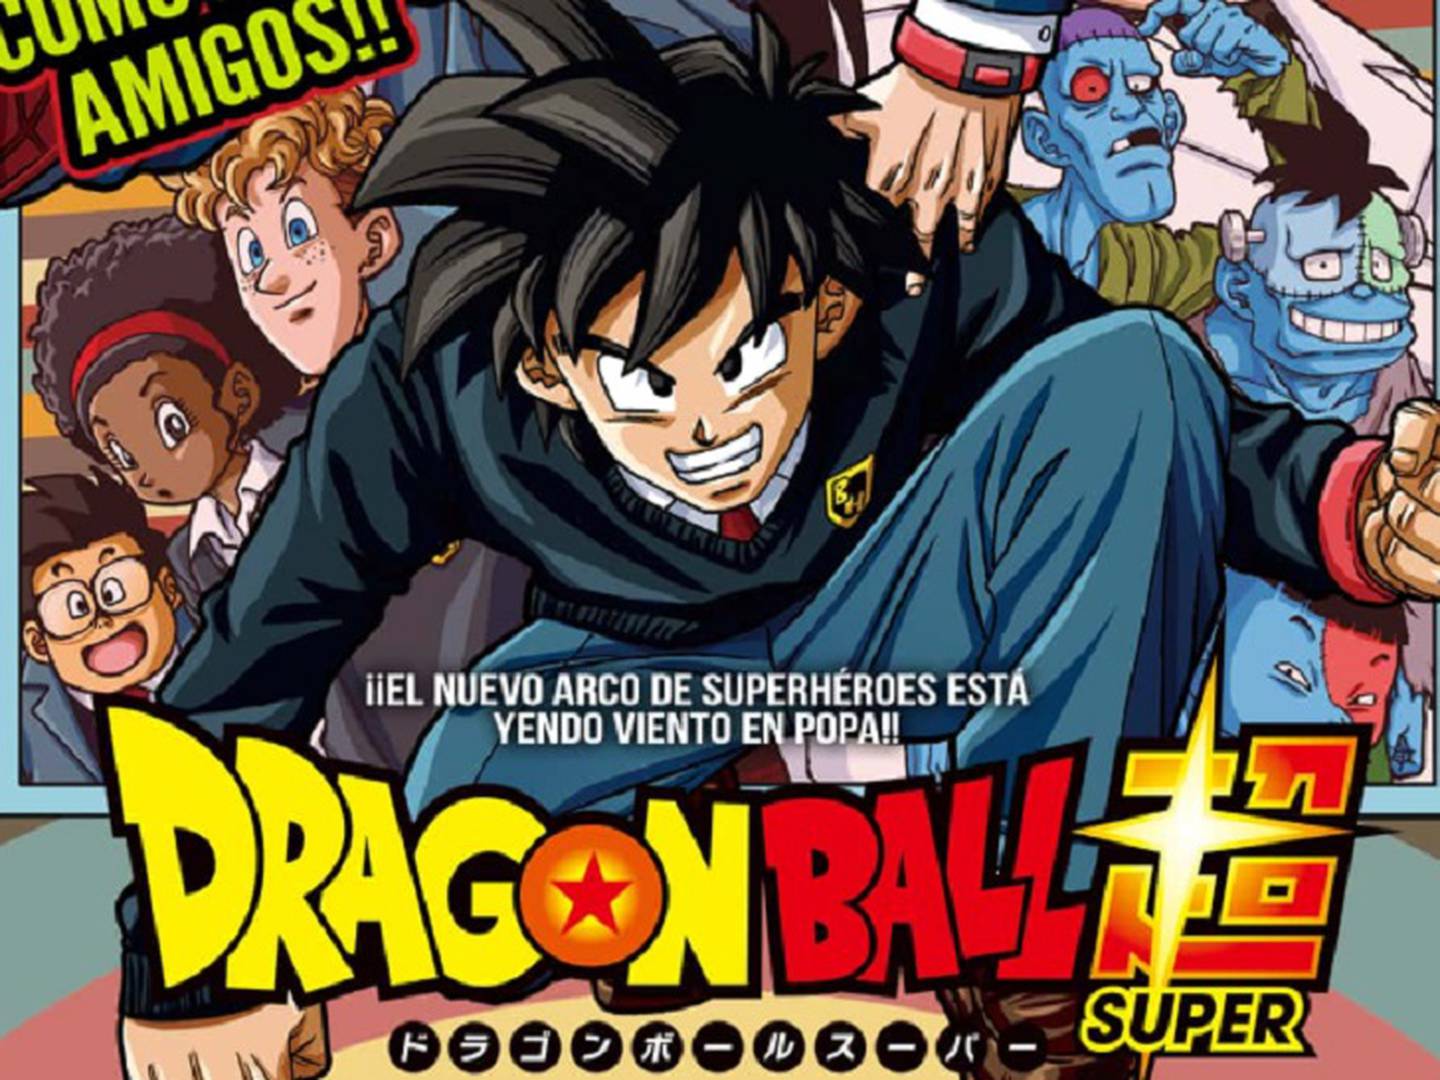 Dragon Ball Super revela primeira imagem do Capítulo 97